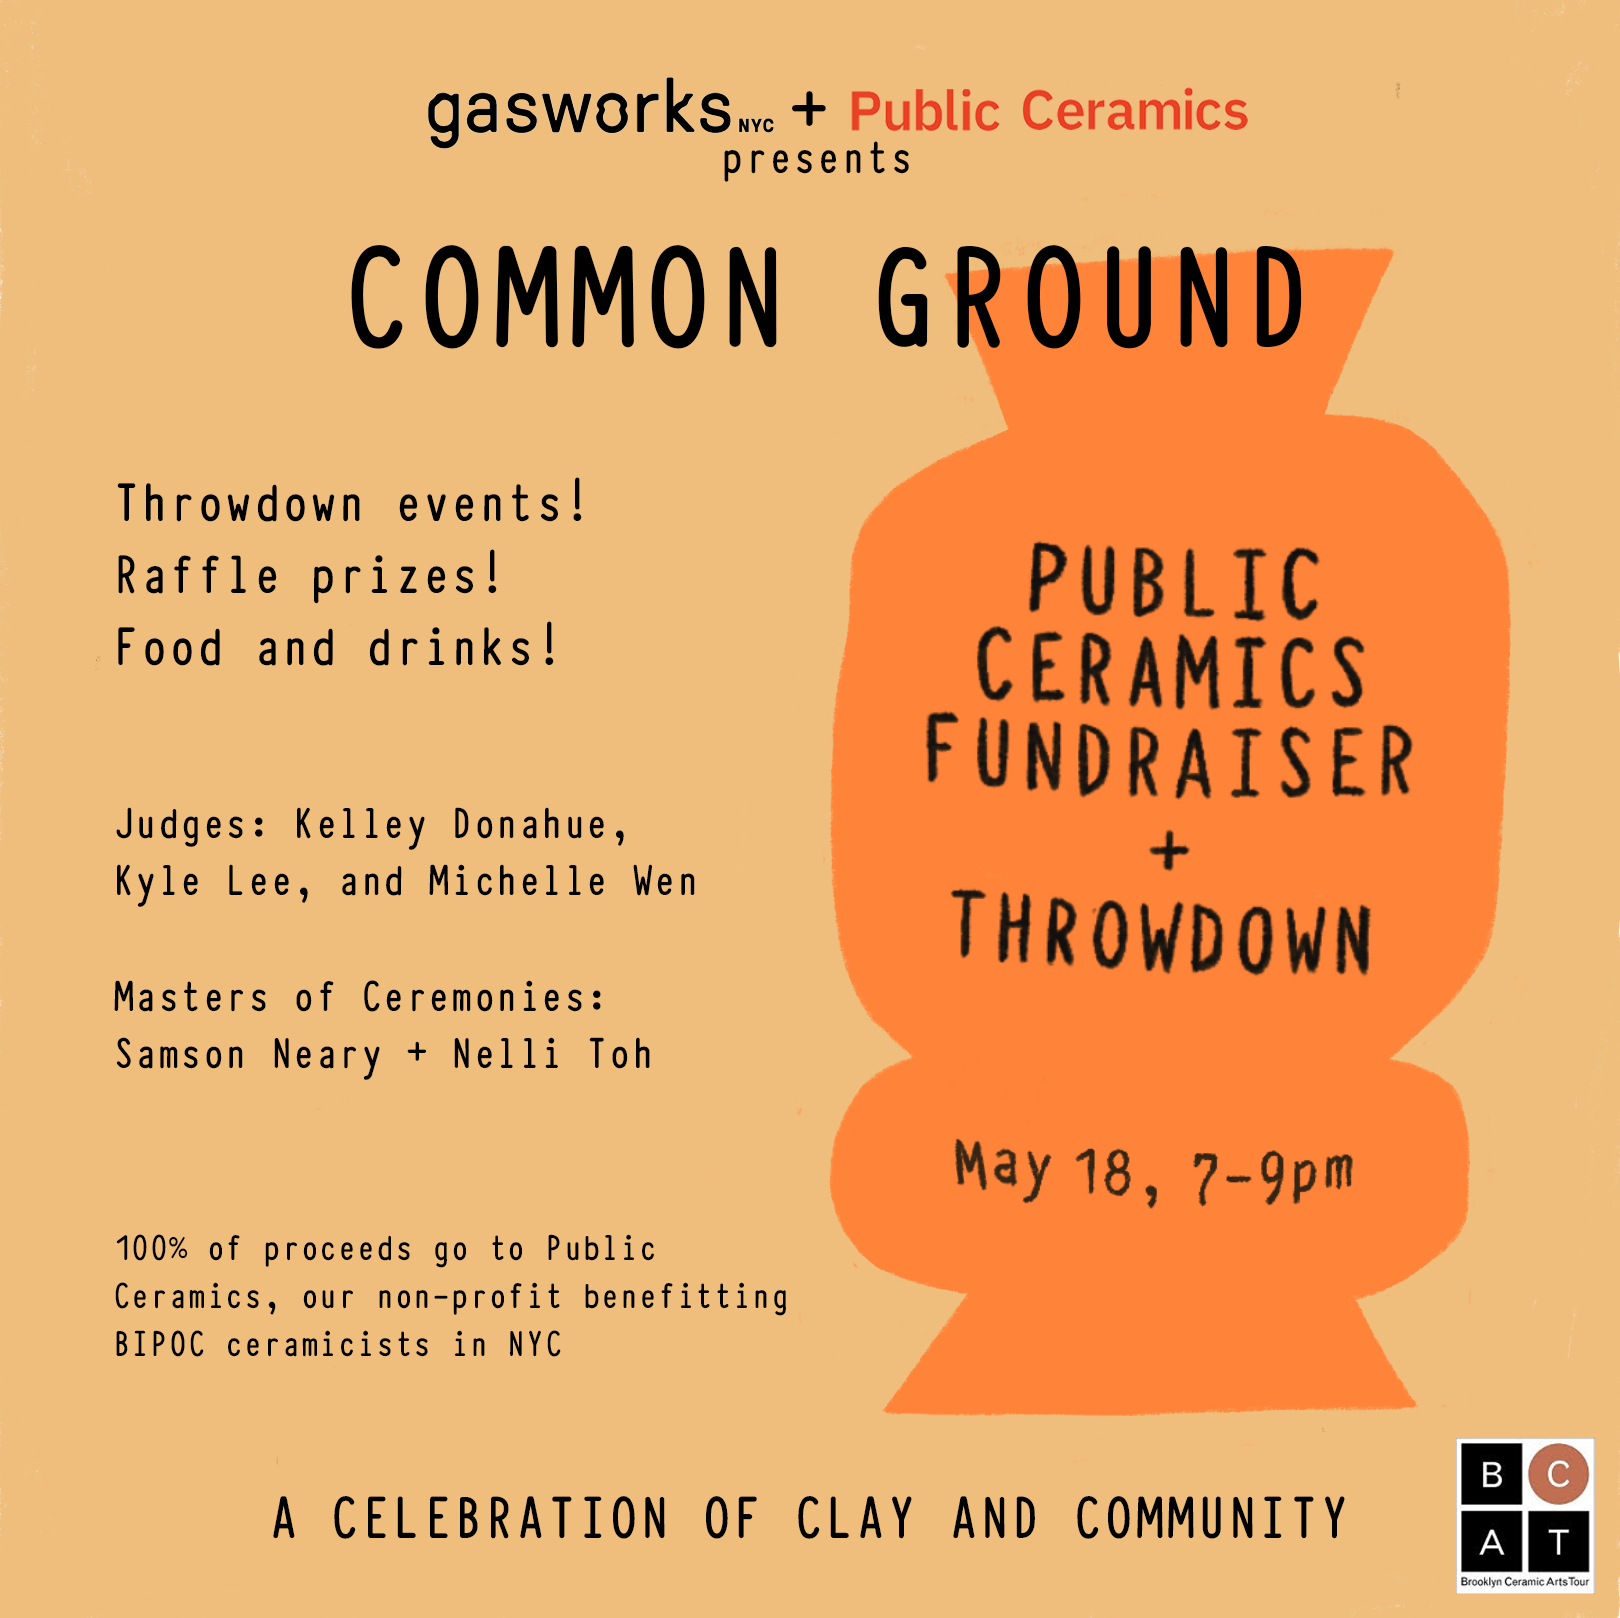 Public Ceramics Fundraiser + Throwdown